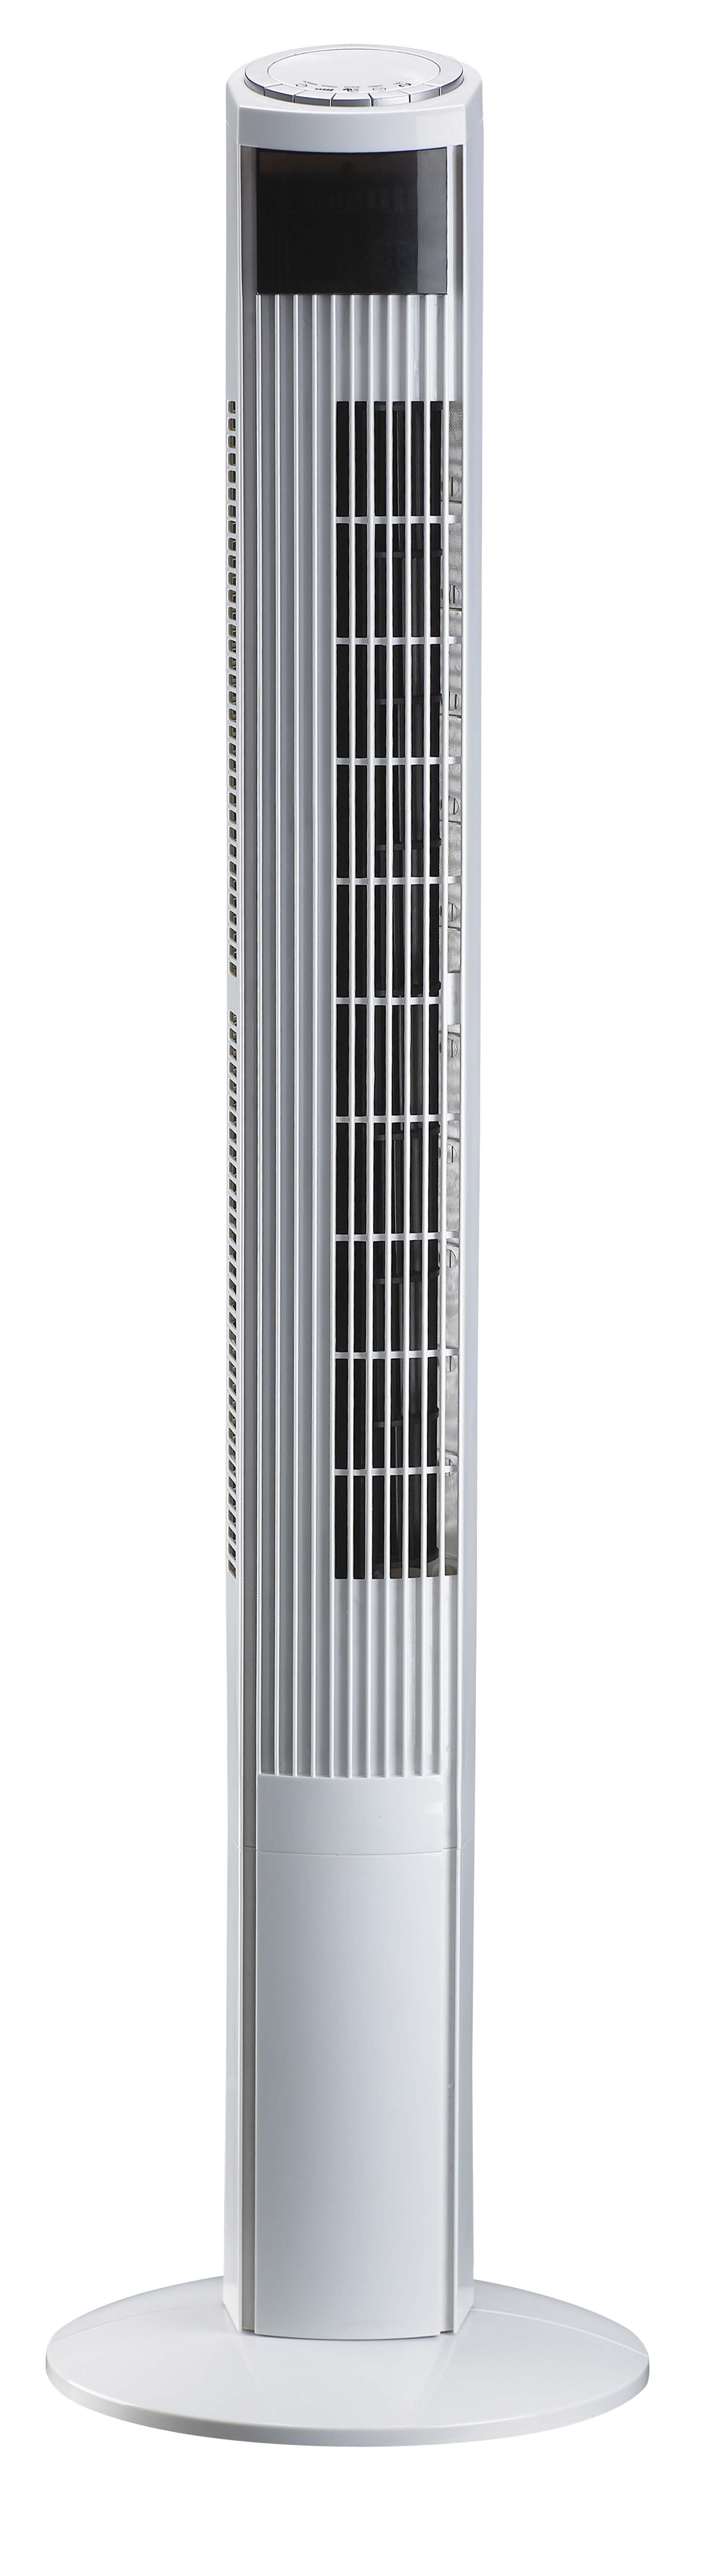 46 inch Turbo Tower Fan，European style tower fan，Remote control tower fan